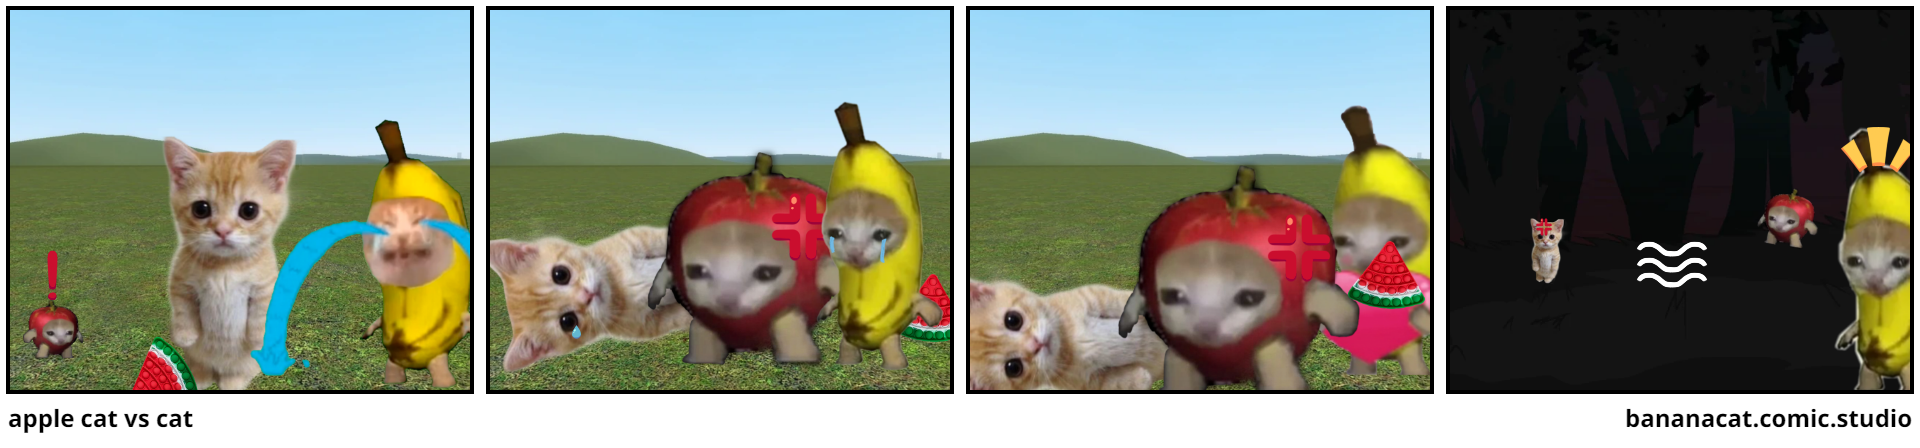 apple cat vs cat